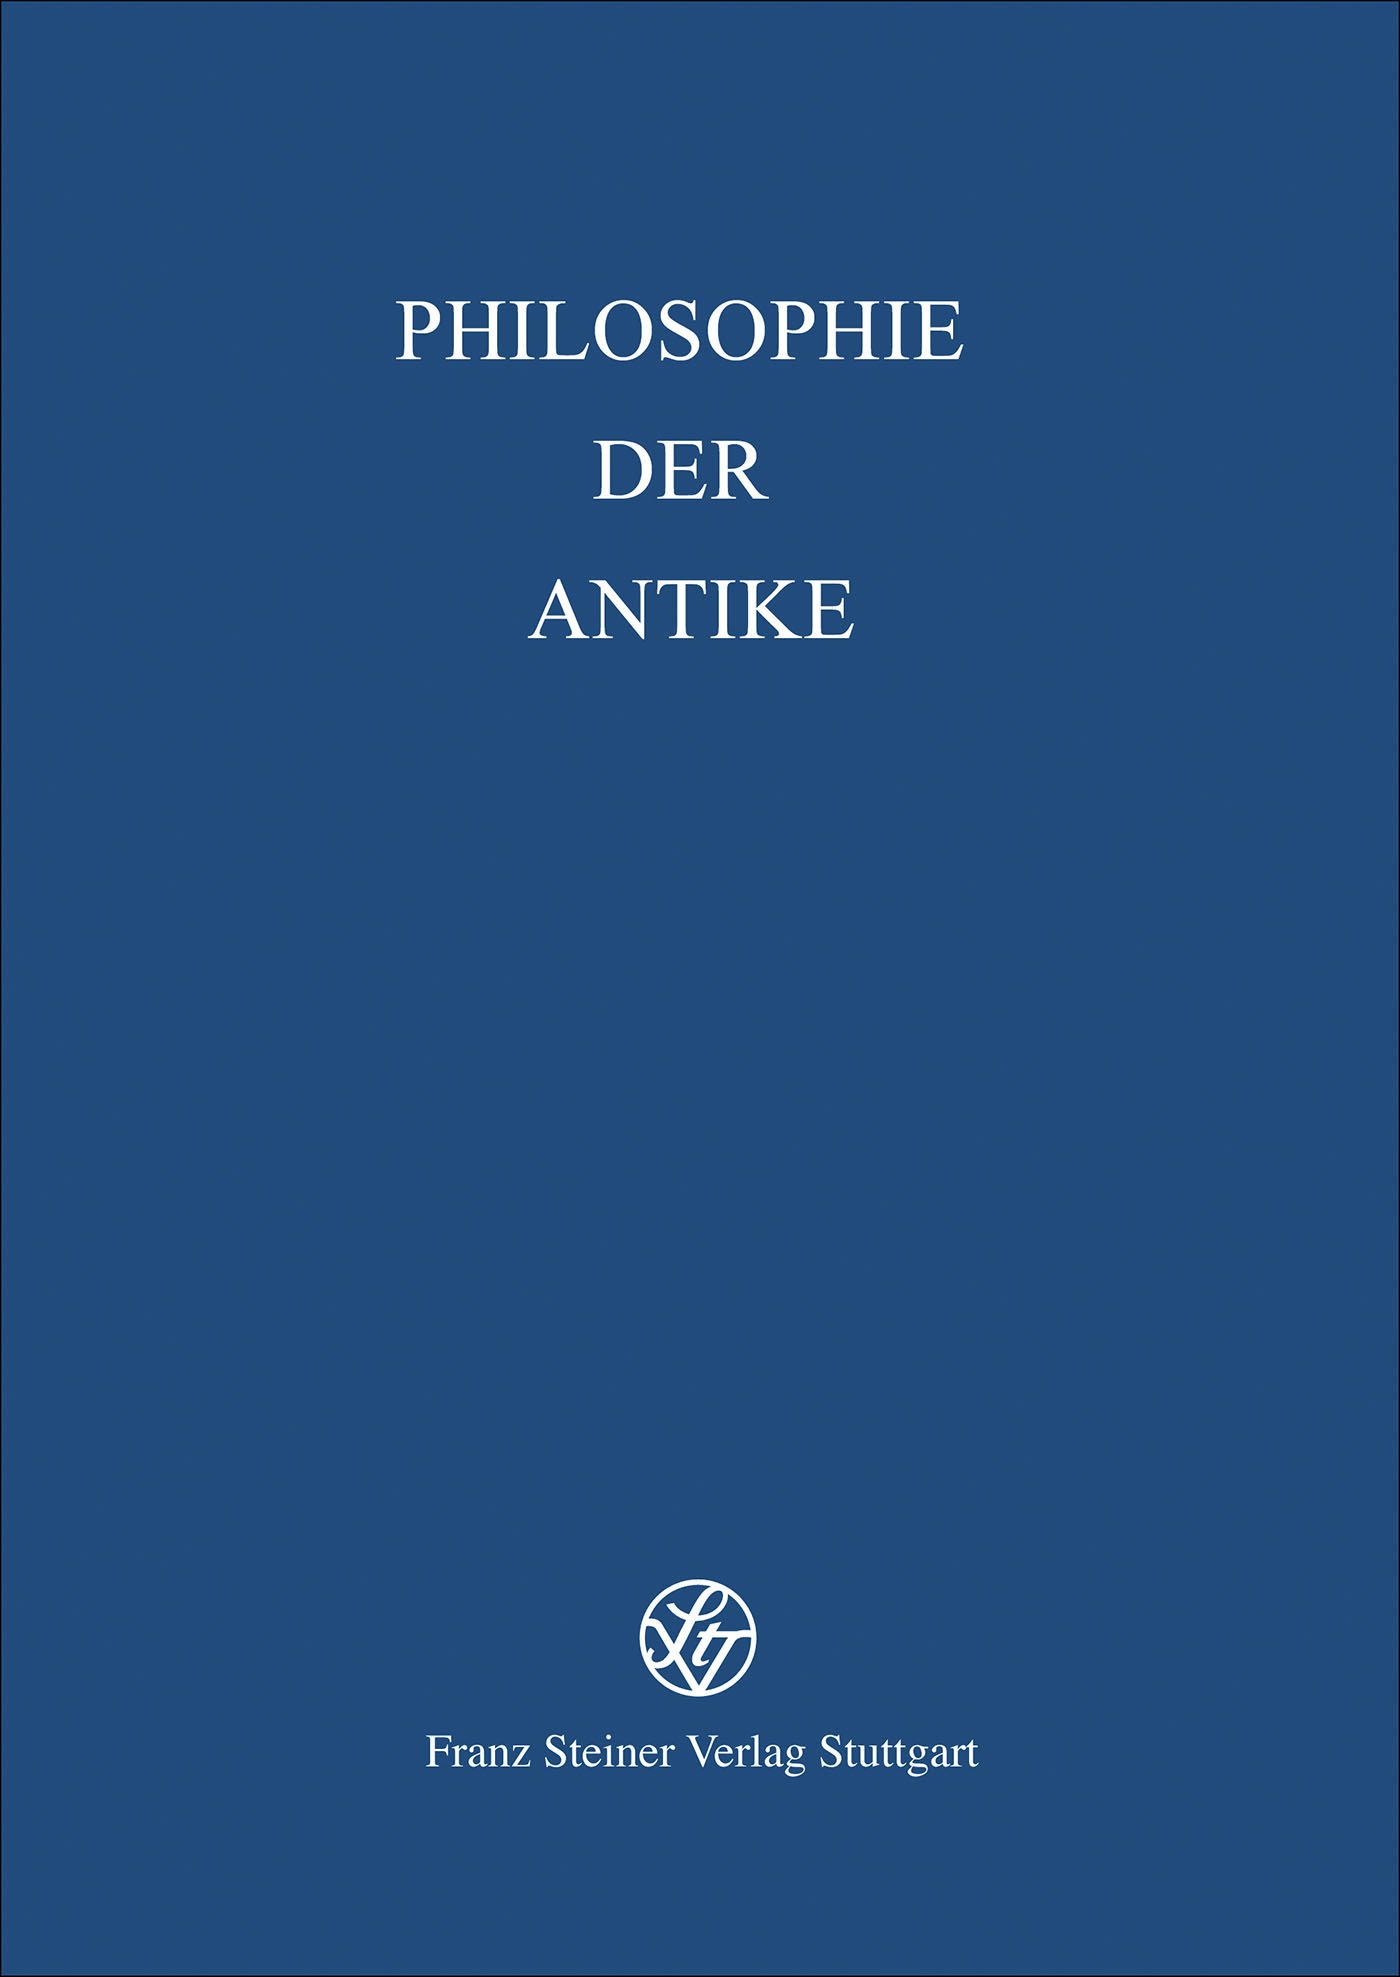 Die christlich-philosophischen Diskurse der Spätantike: Texte, Personen, Institutionen